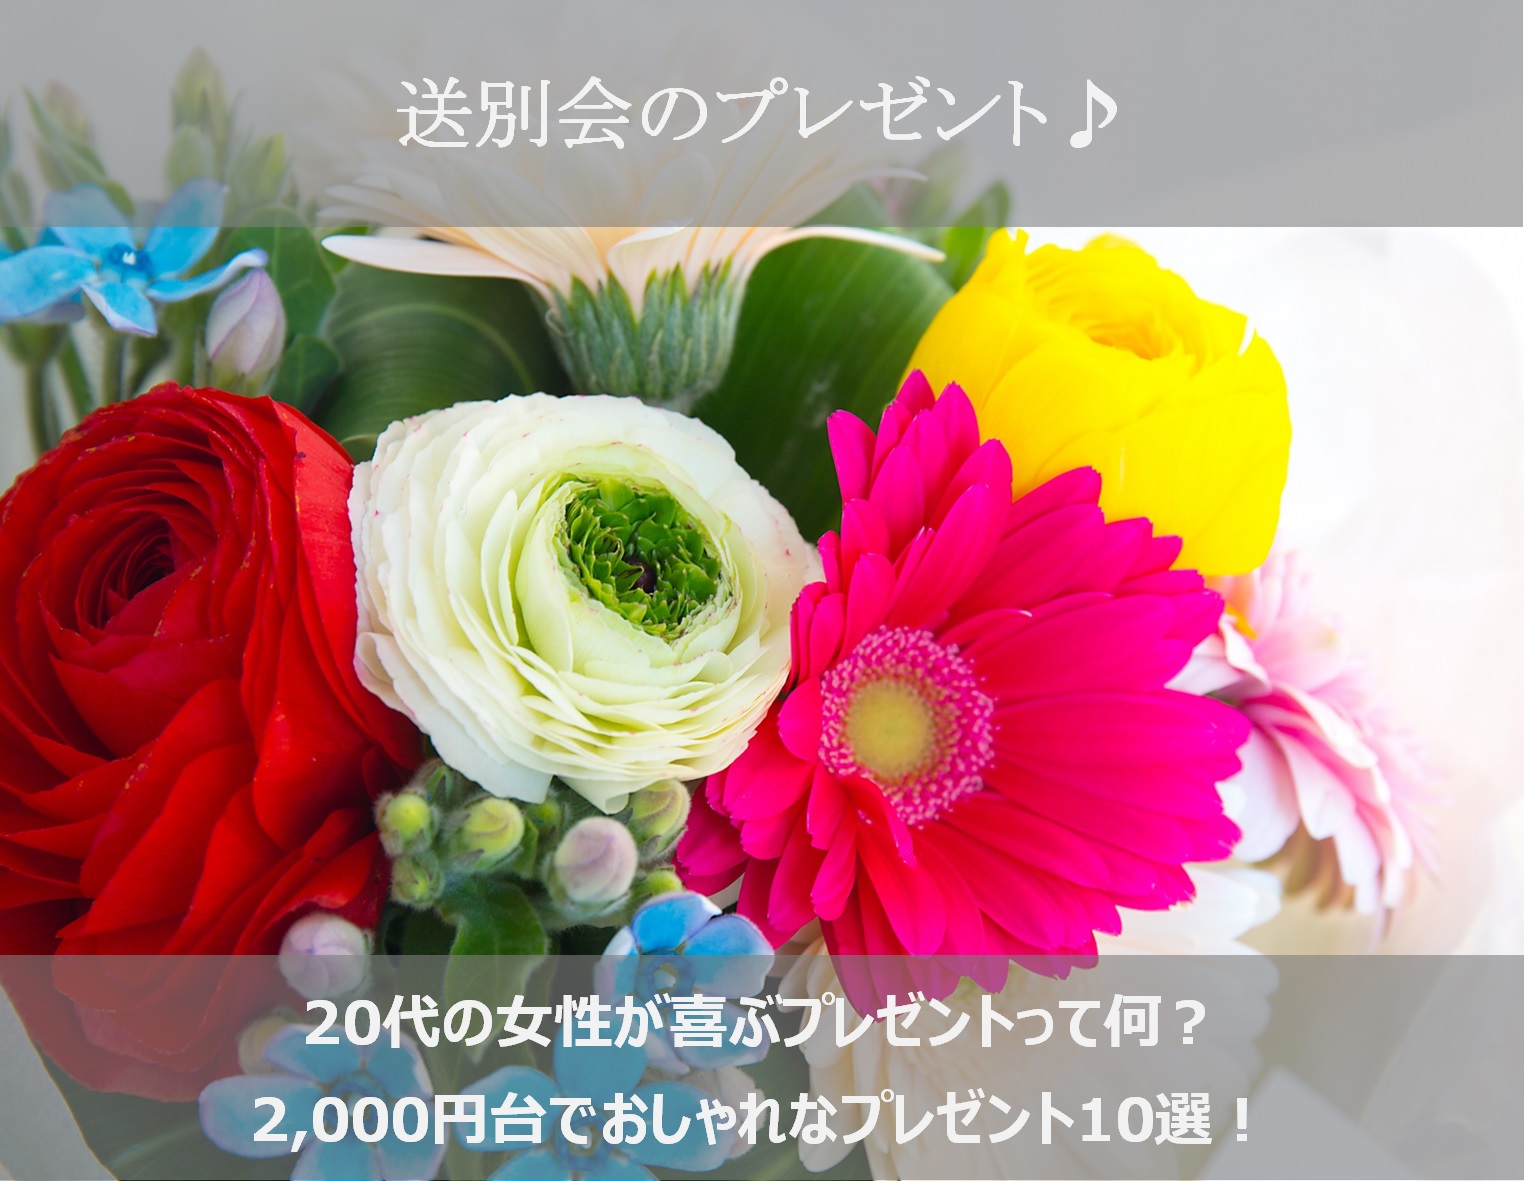 送別会のプレゼント19 代の女性が喜ぶ00円台でおしゃれな10選 シアワセノキセキ